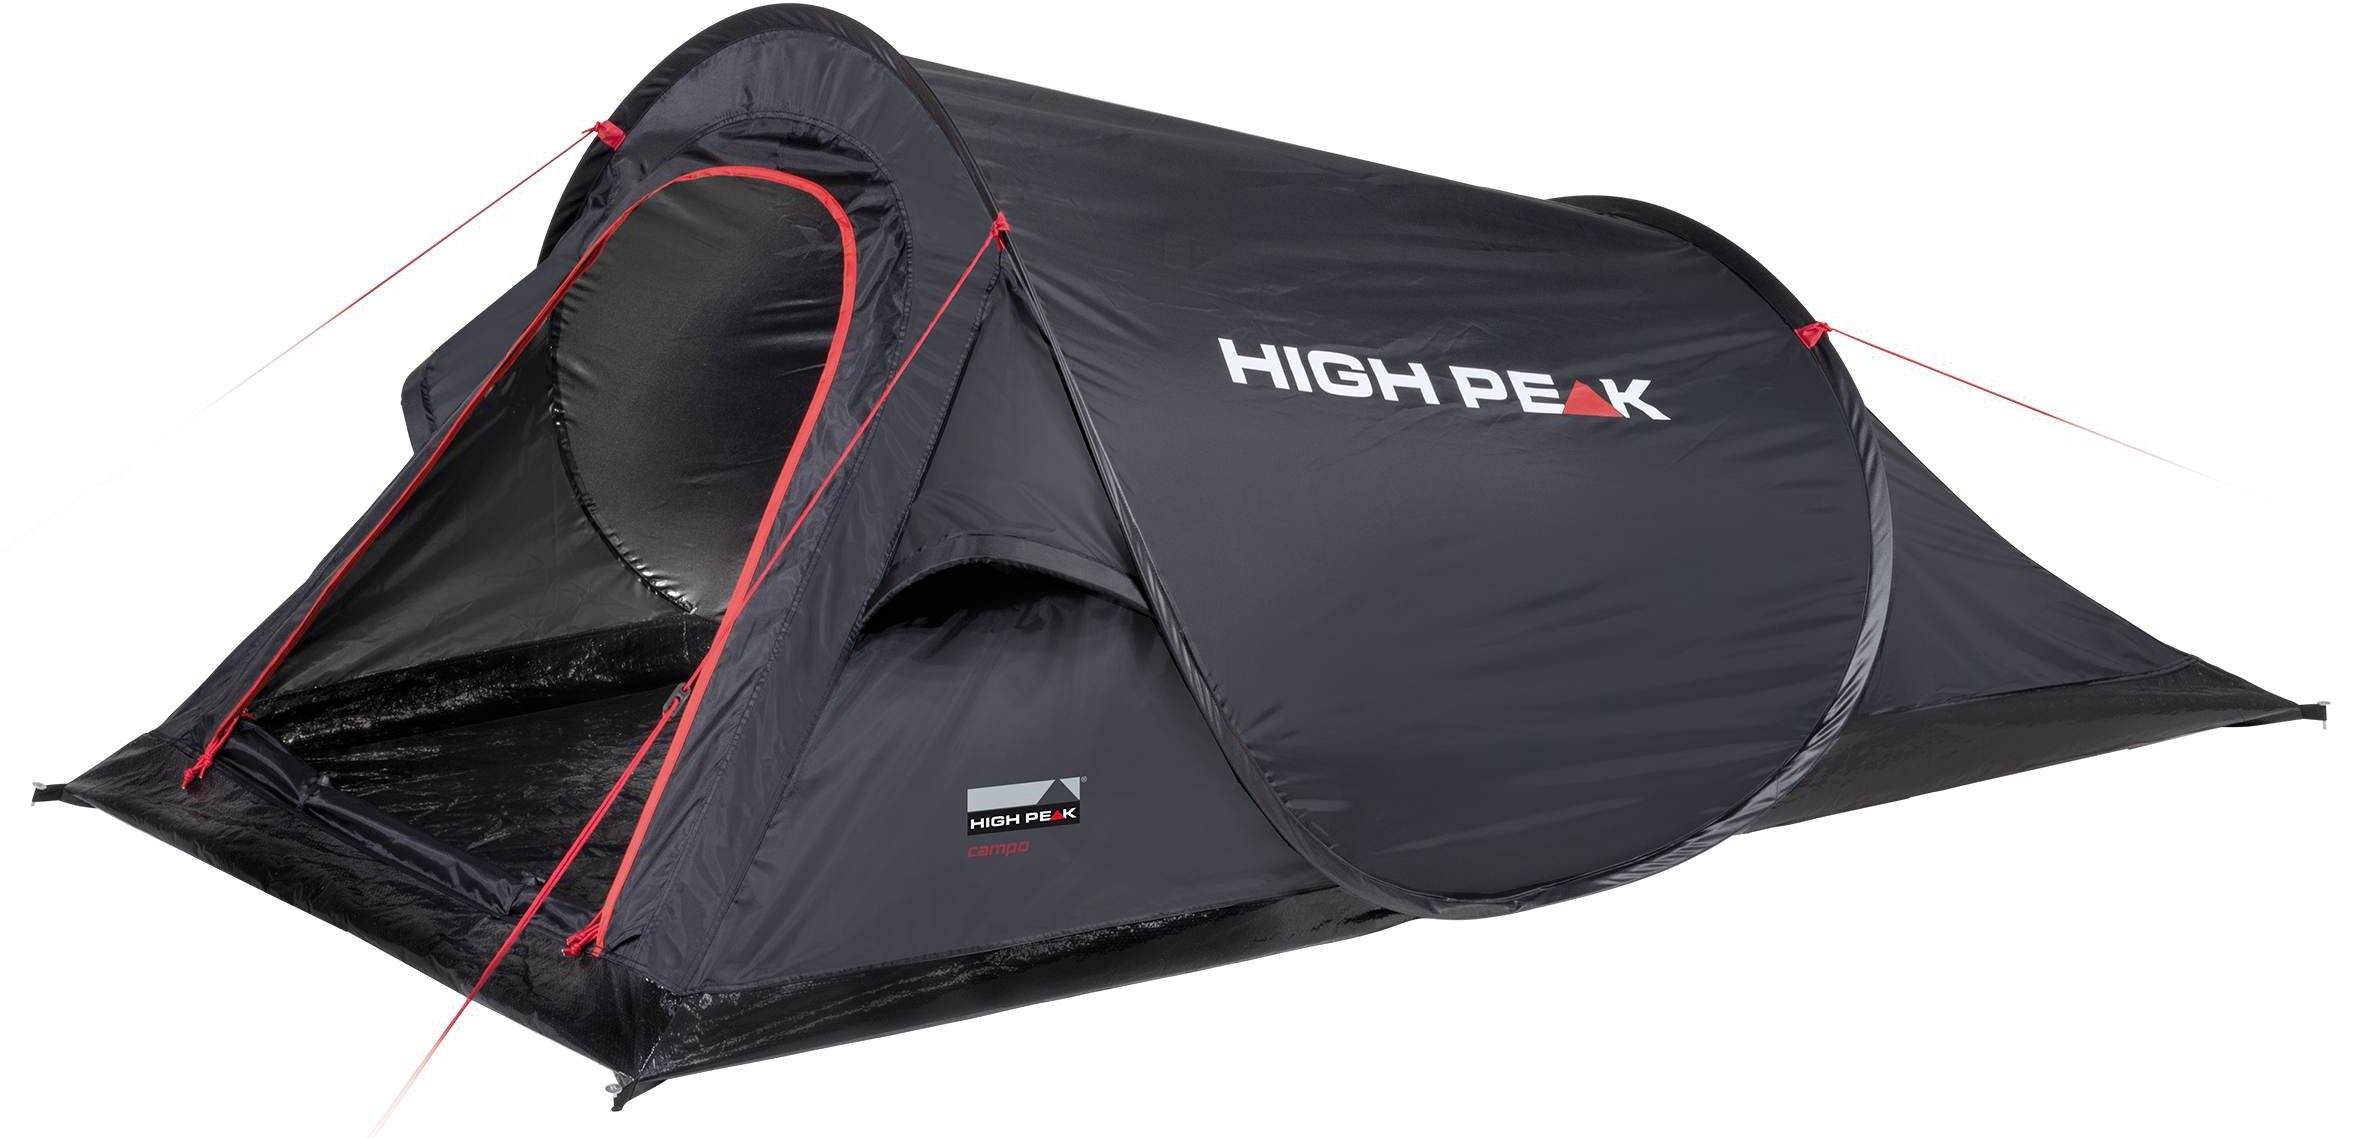 Campo, Wurfzelt Personen: High up Zelt Extra Pop große Ventilation Transporttasche), mit Peak Abspann-Funktion 2 (mit